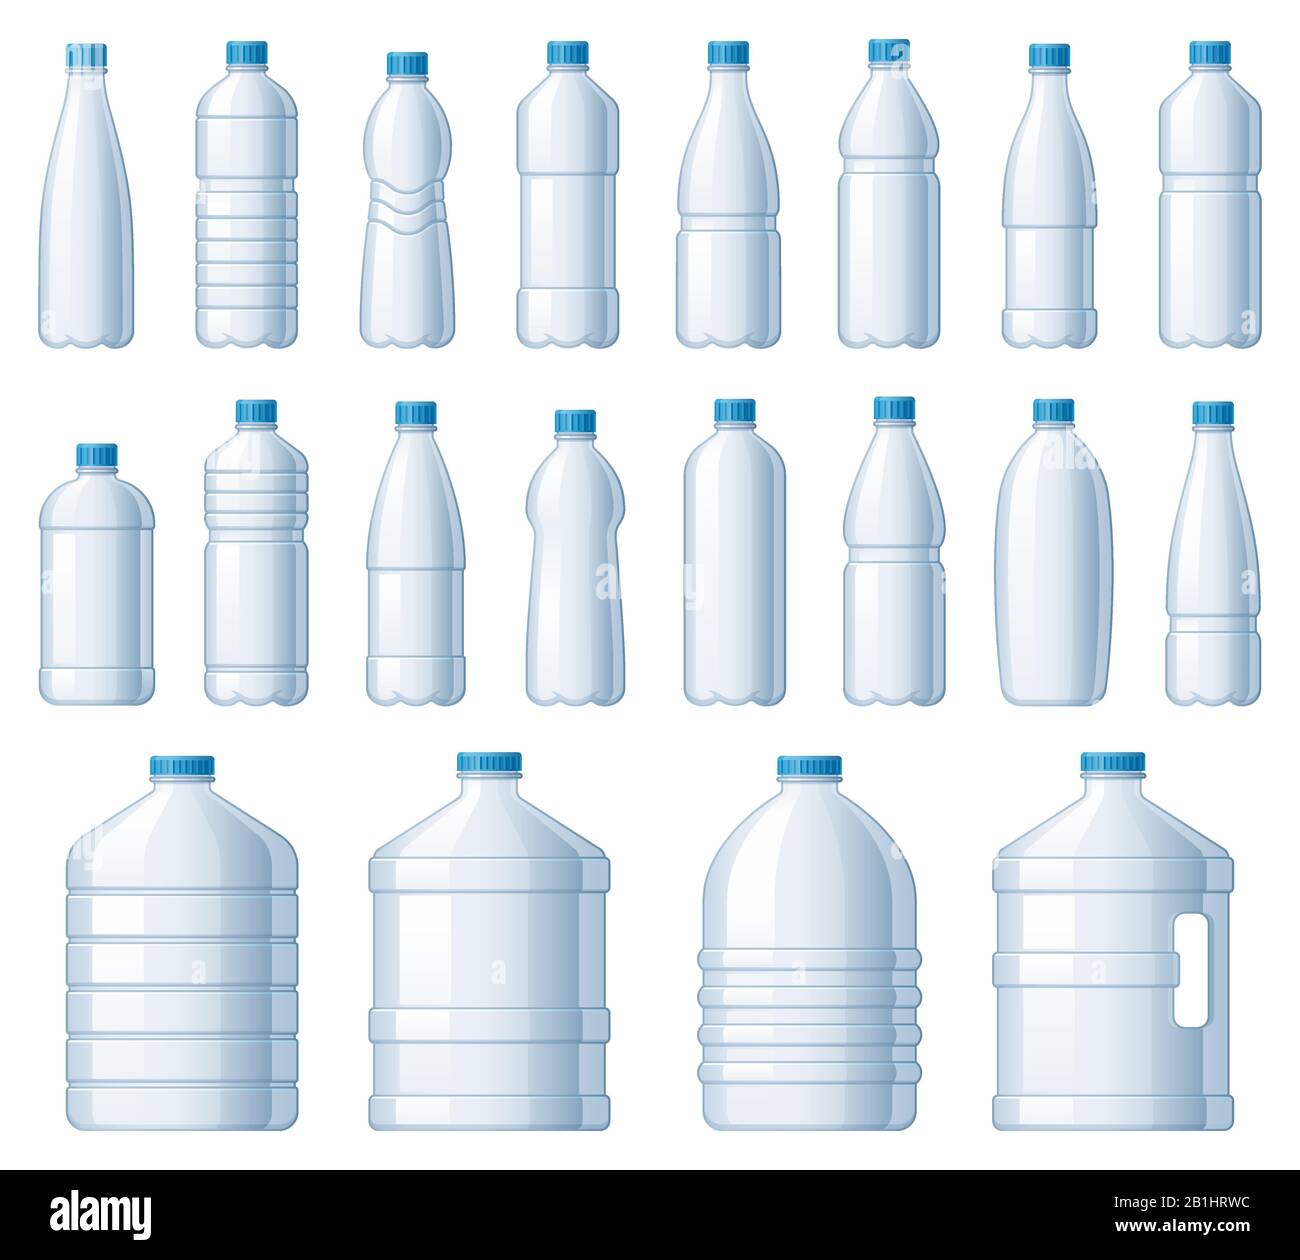 Kunststoffflaschen. Wasserkühlerflasche, PET-Paket für Flüssigkeiten und Limonade Getränkefektor-Vektor-Set Stock Vektor